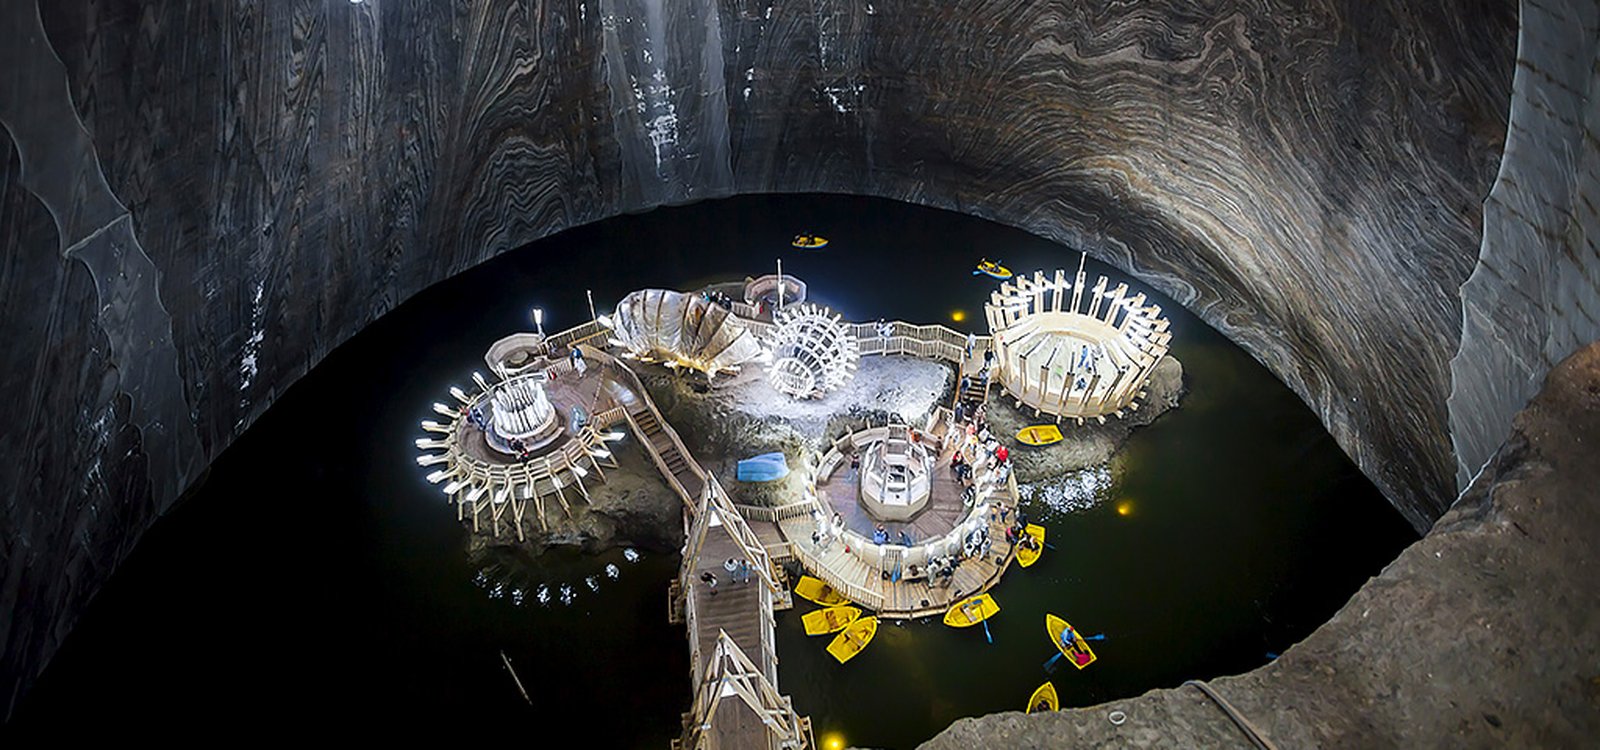 <p>Na mina Salina Turda, na Romênia, há um lago subterrâneo onde os visitantes podem passear em barcos a remos.</p>
